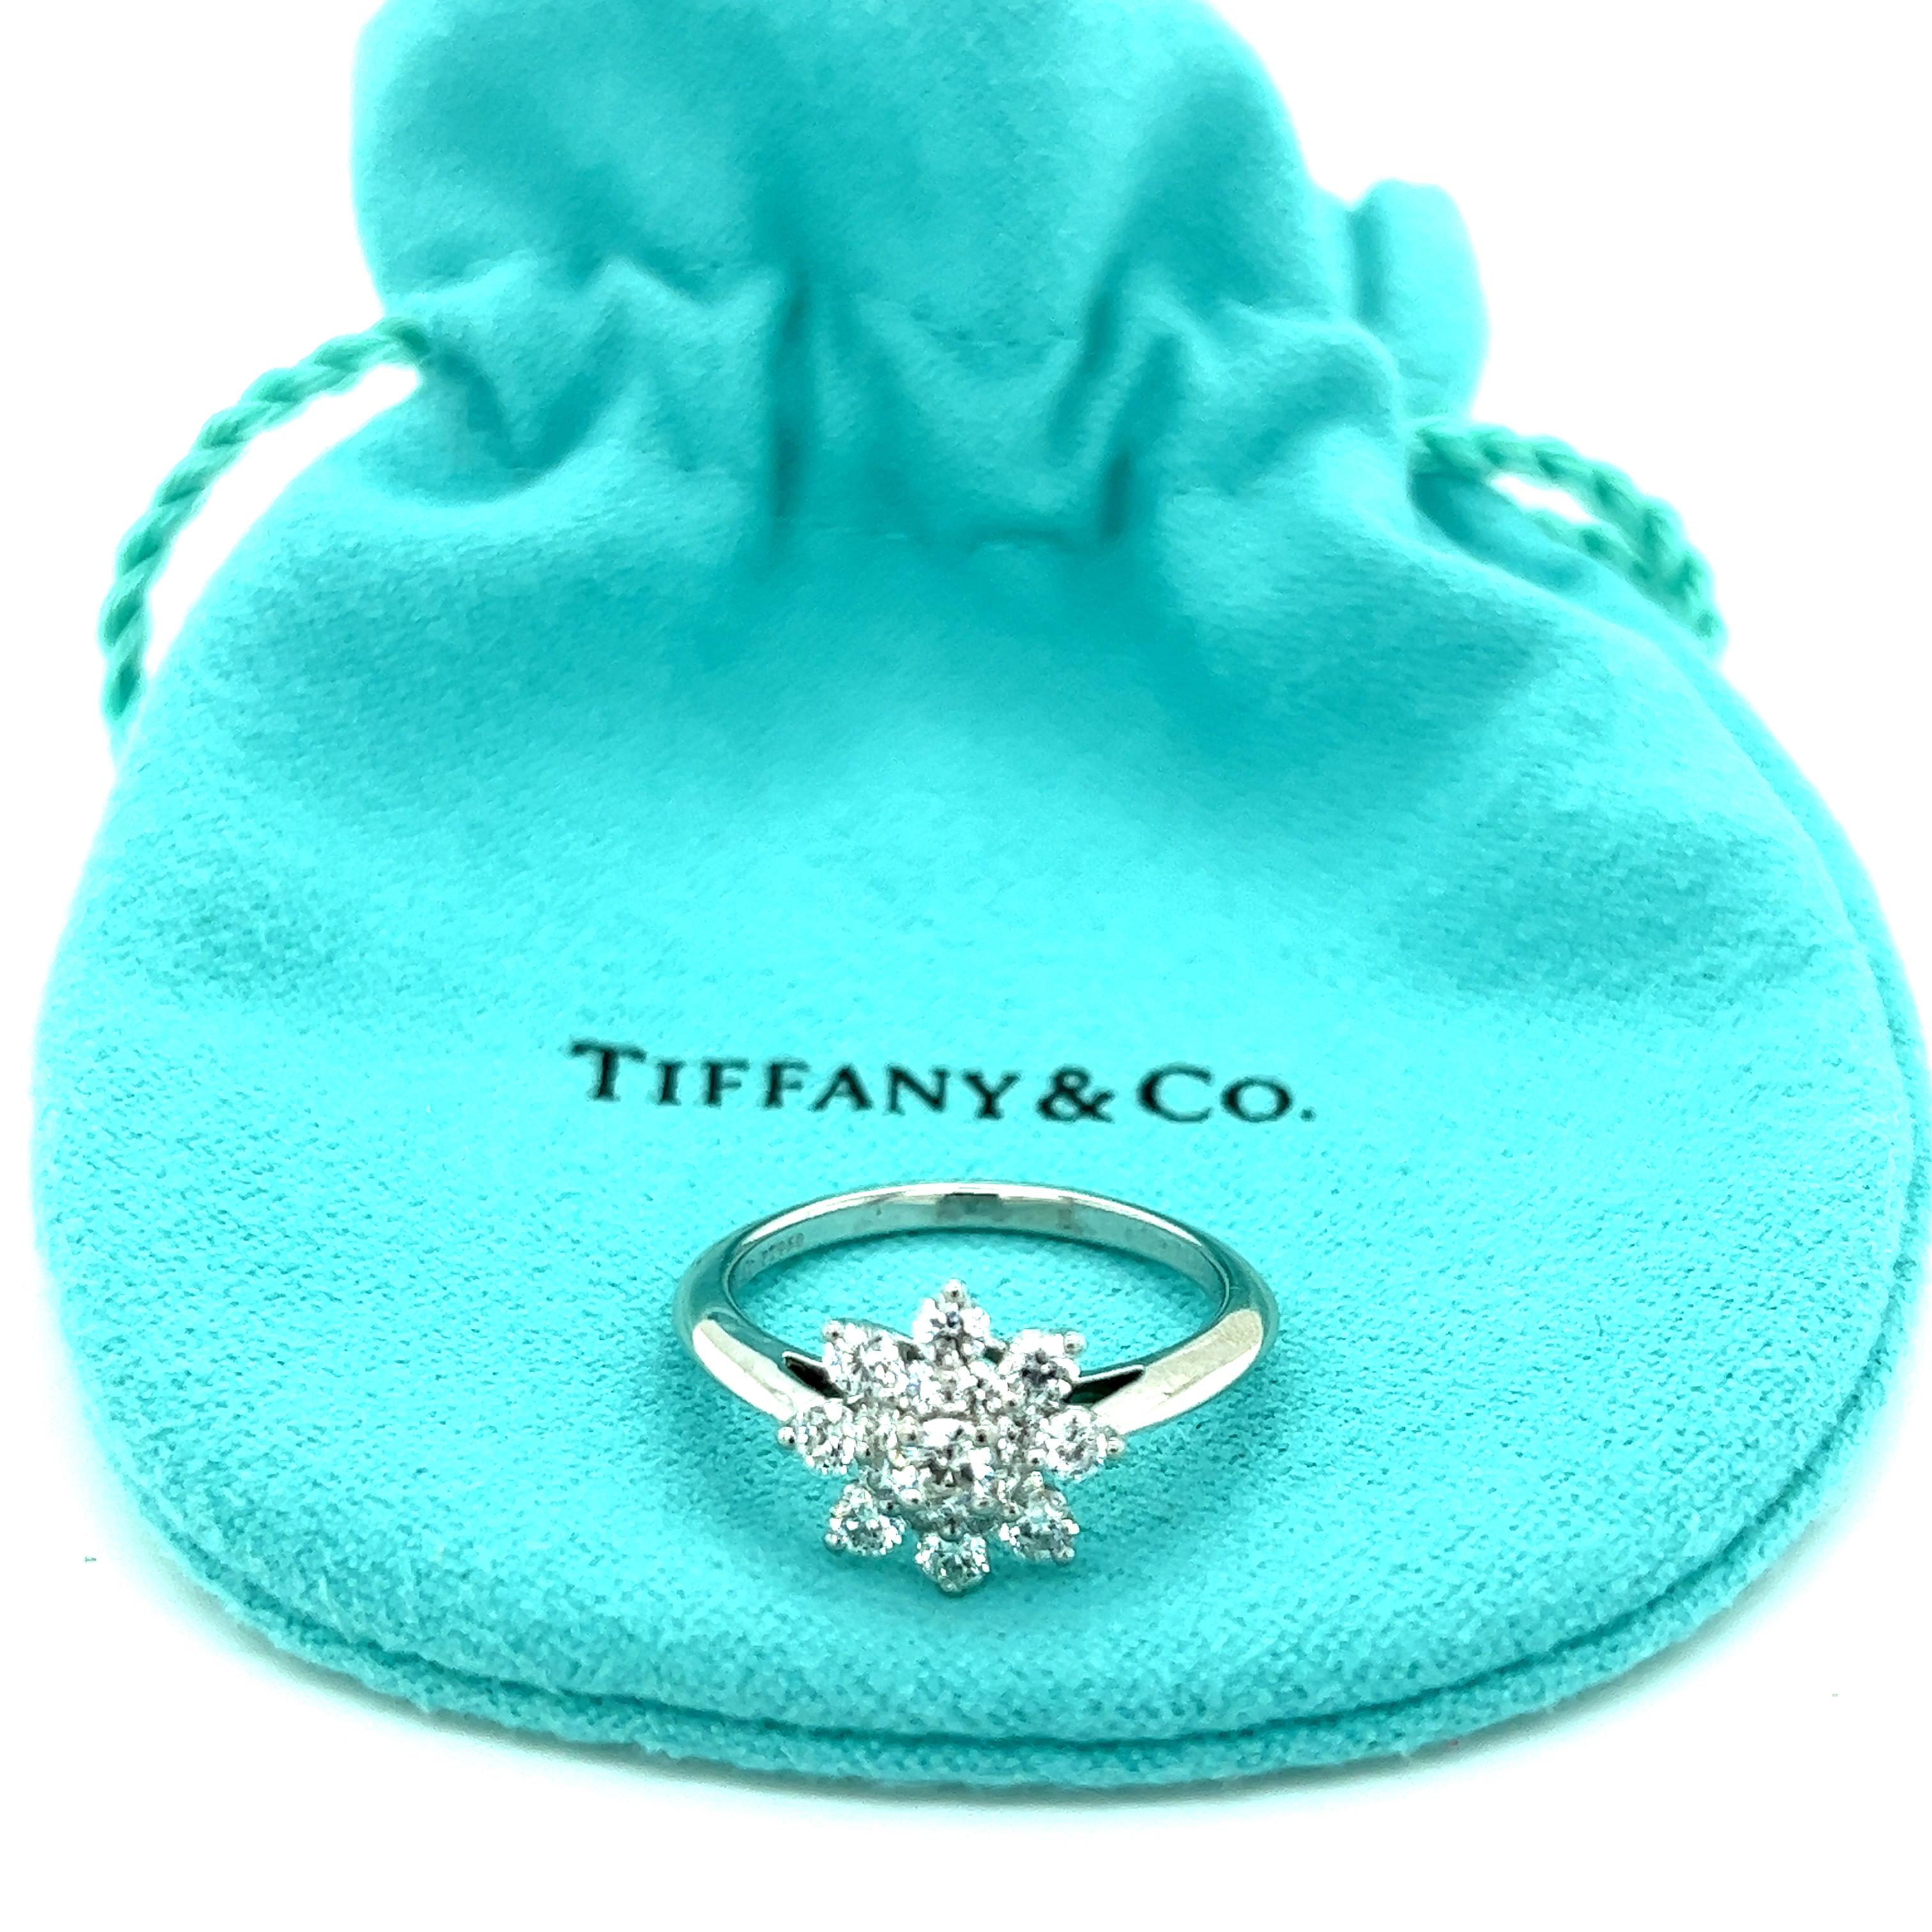 Dieser wunderschöne, authentische Ring ist von Tiffany & Co. Gefertigt aus Platin mit niedrigem Steg und messerscharfem Schaft an einem sich verjüngenden Band. Der obere Teil der Brücke ist mit einer schönen Blume in Form einer Schneeflocke